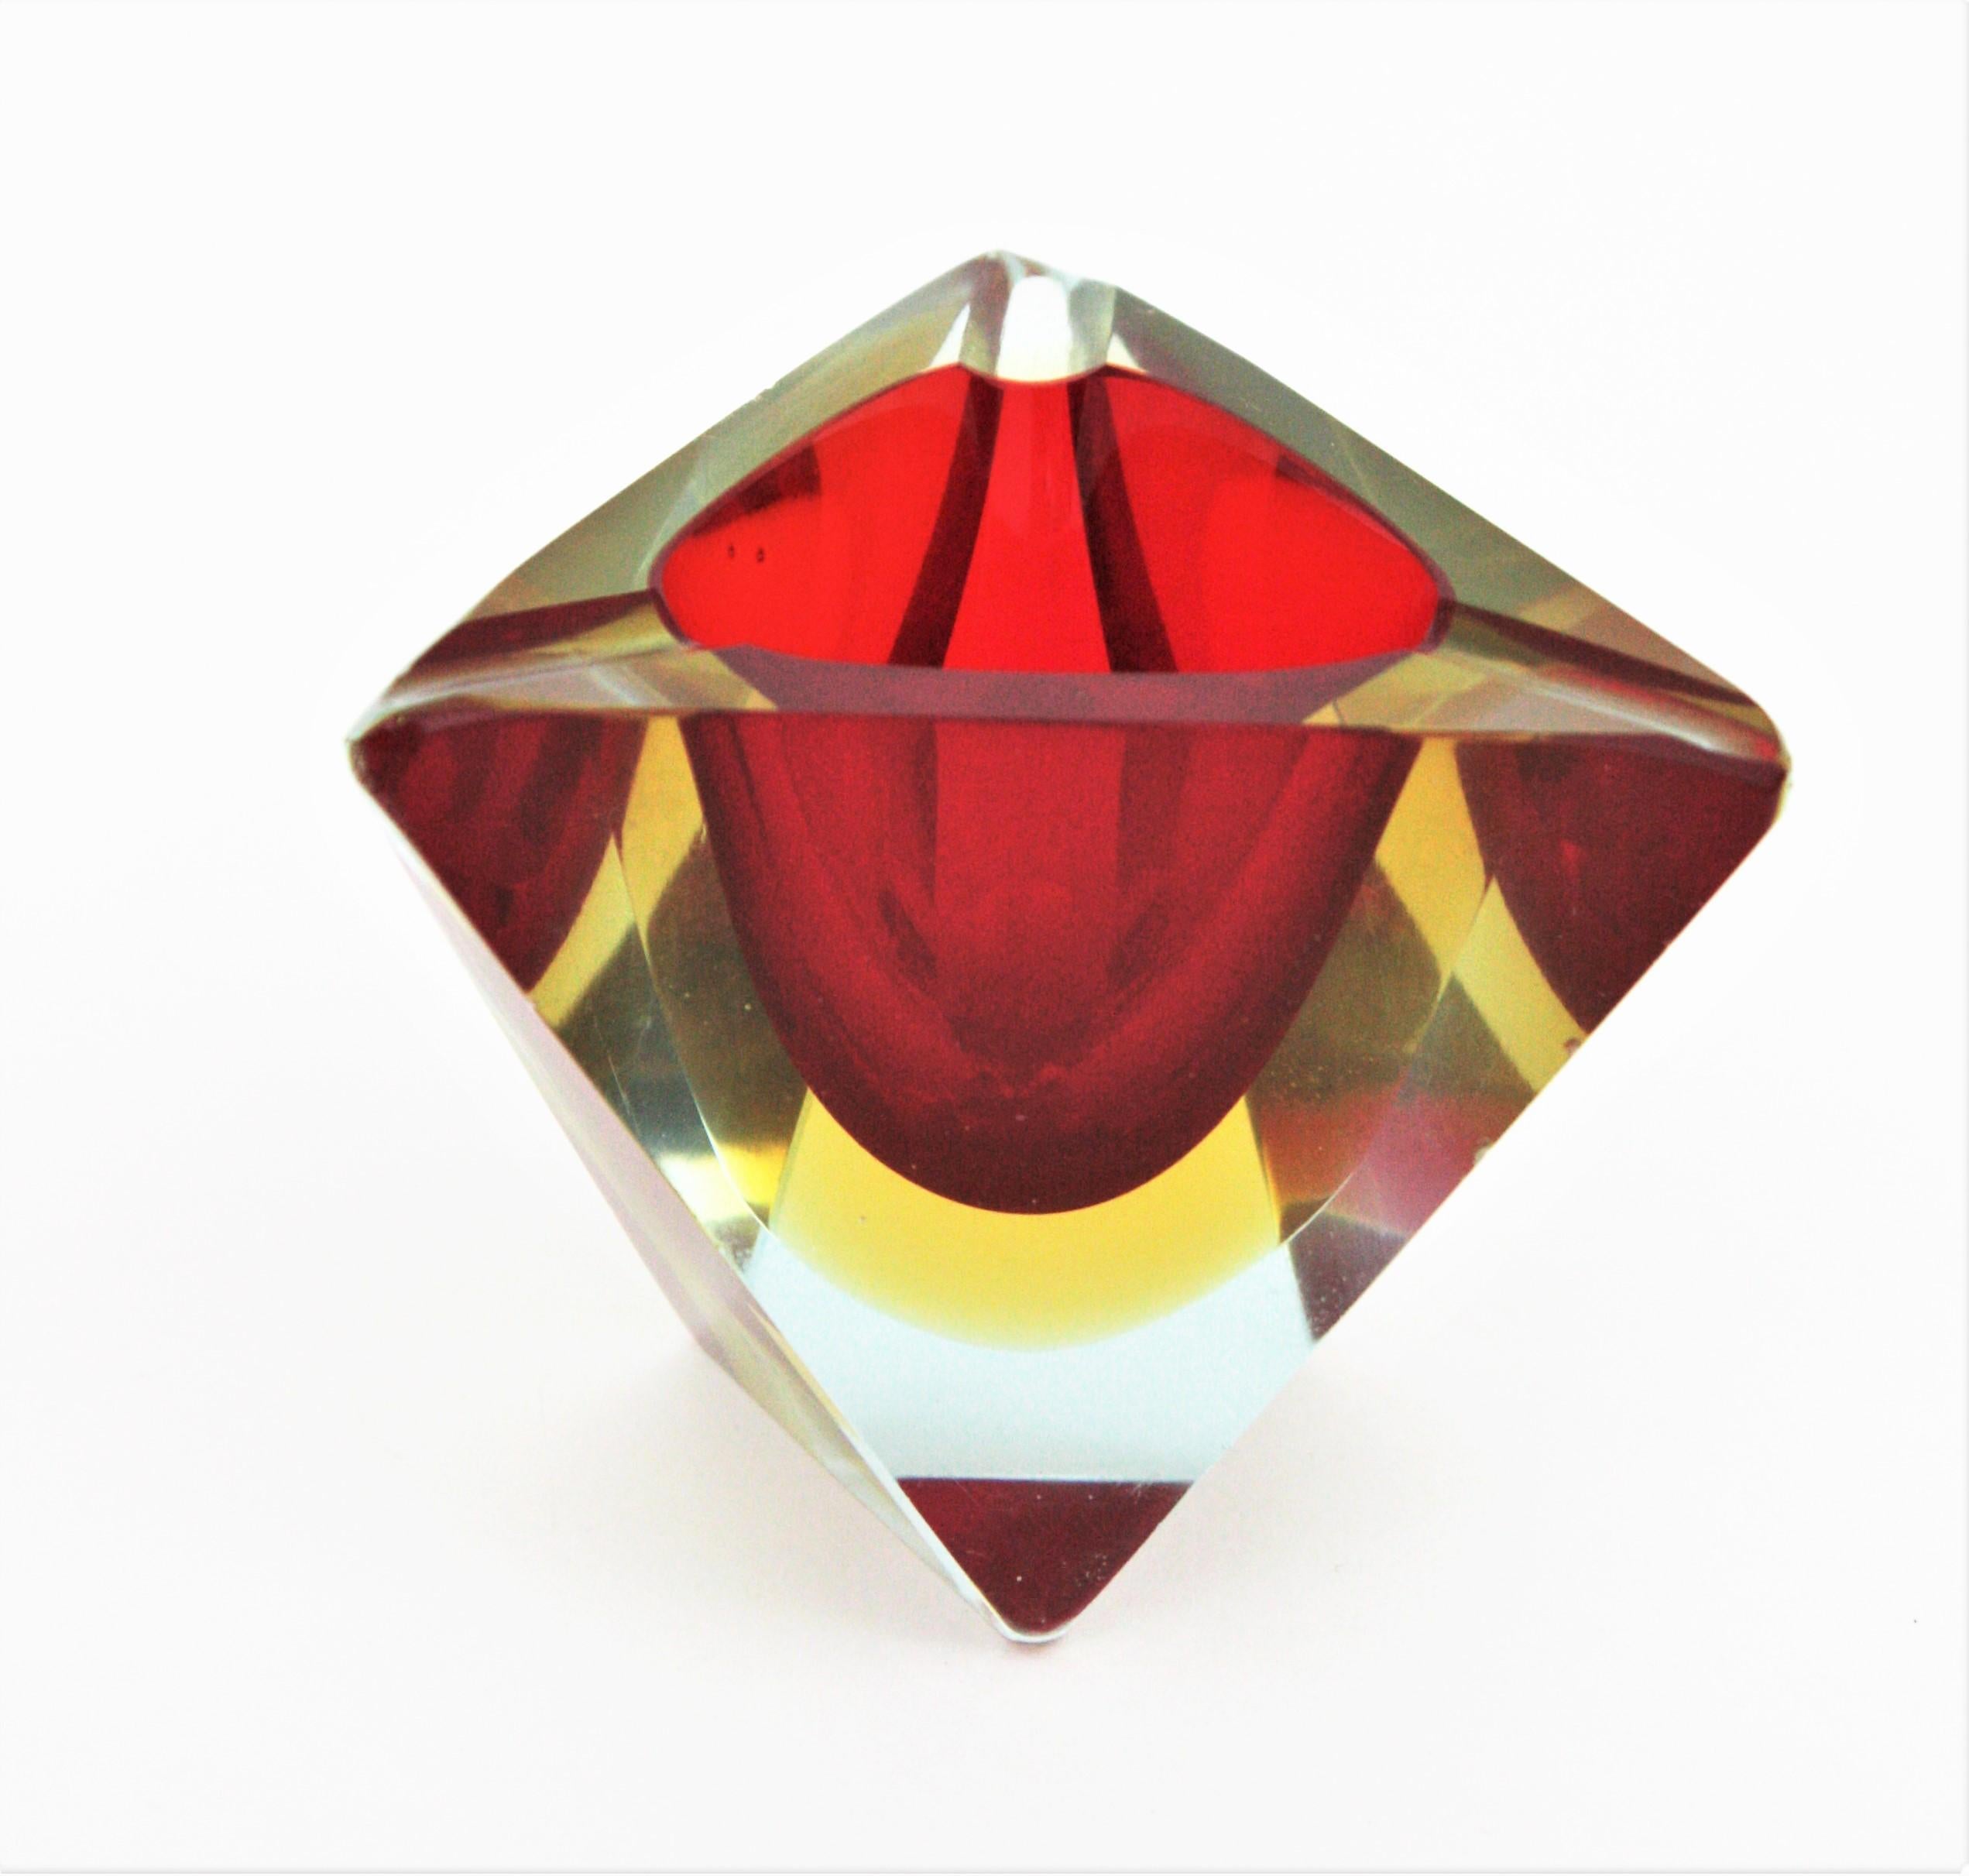 Dreieckiger Aschenbecher aus facettiertem Murano-Glas von Sommerso. Flavio Poli zugeschrieben, Italien, 1950er Jahre.
Rotes und gelbes Glas in Klarglas eingefasst.
Er kann auch als kleine Ringe oder Schmuckschale verwendet werden.
Die passenden